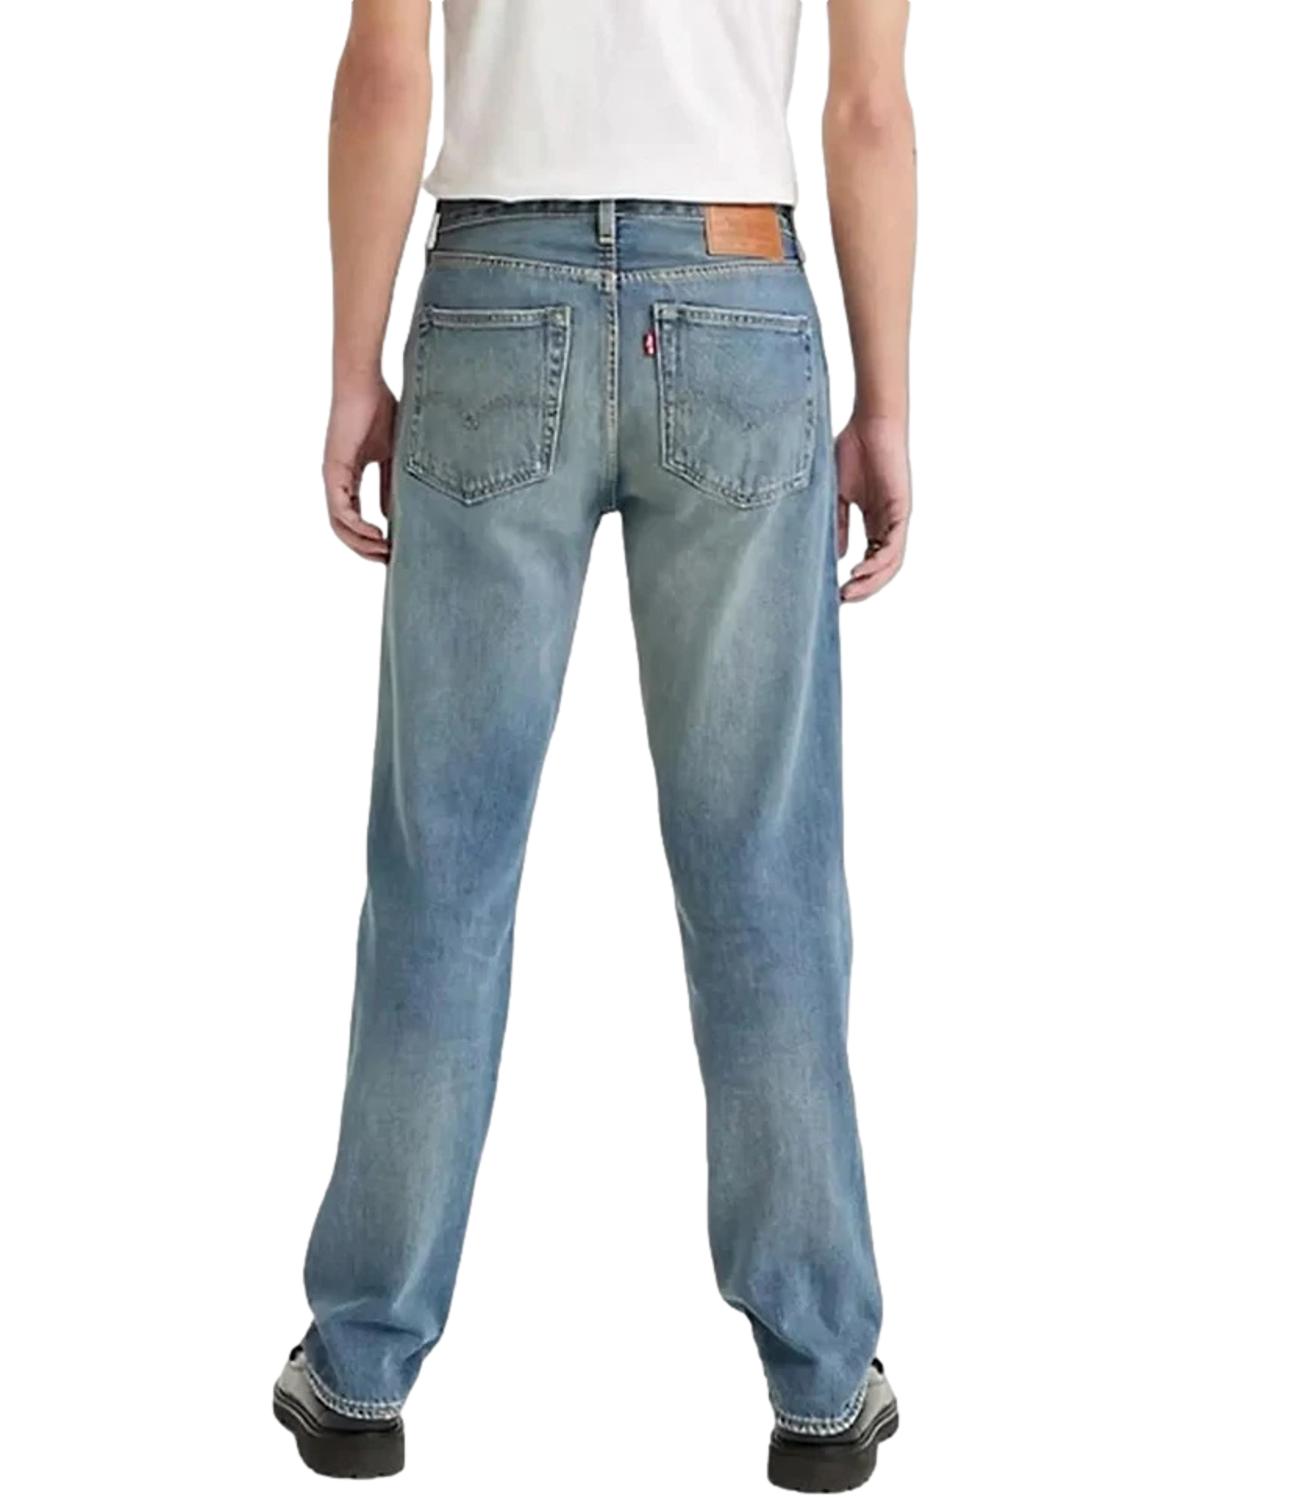 Levi's Medium Men's Jeans 501